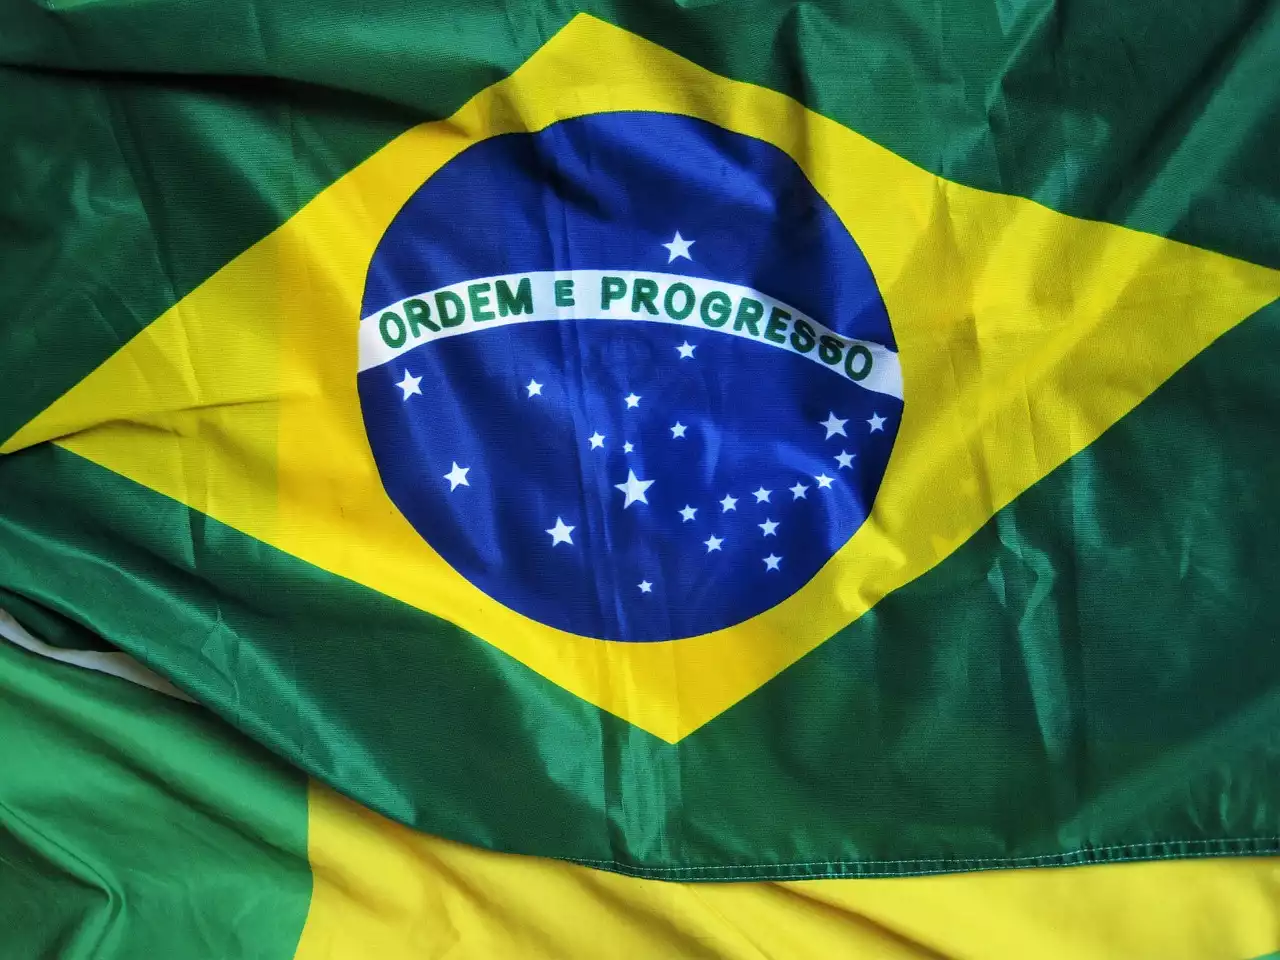 Revelando os estilos de liderança dos dirigentes da Série A do Brasil